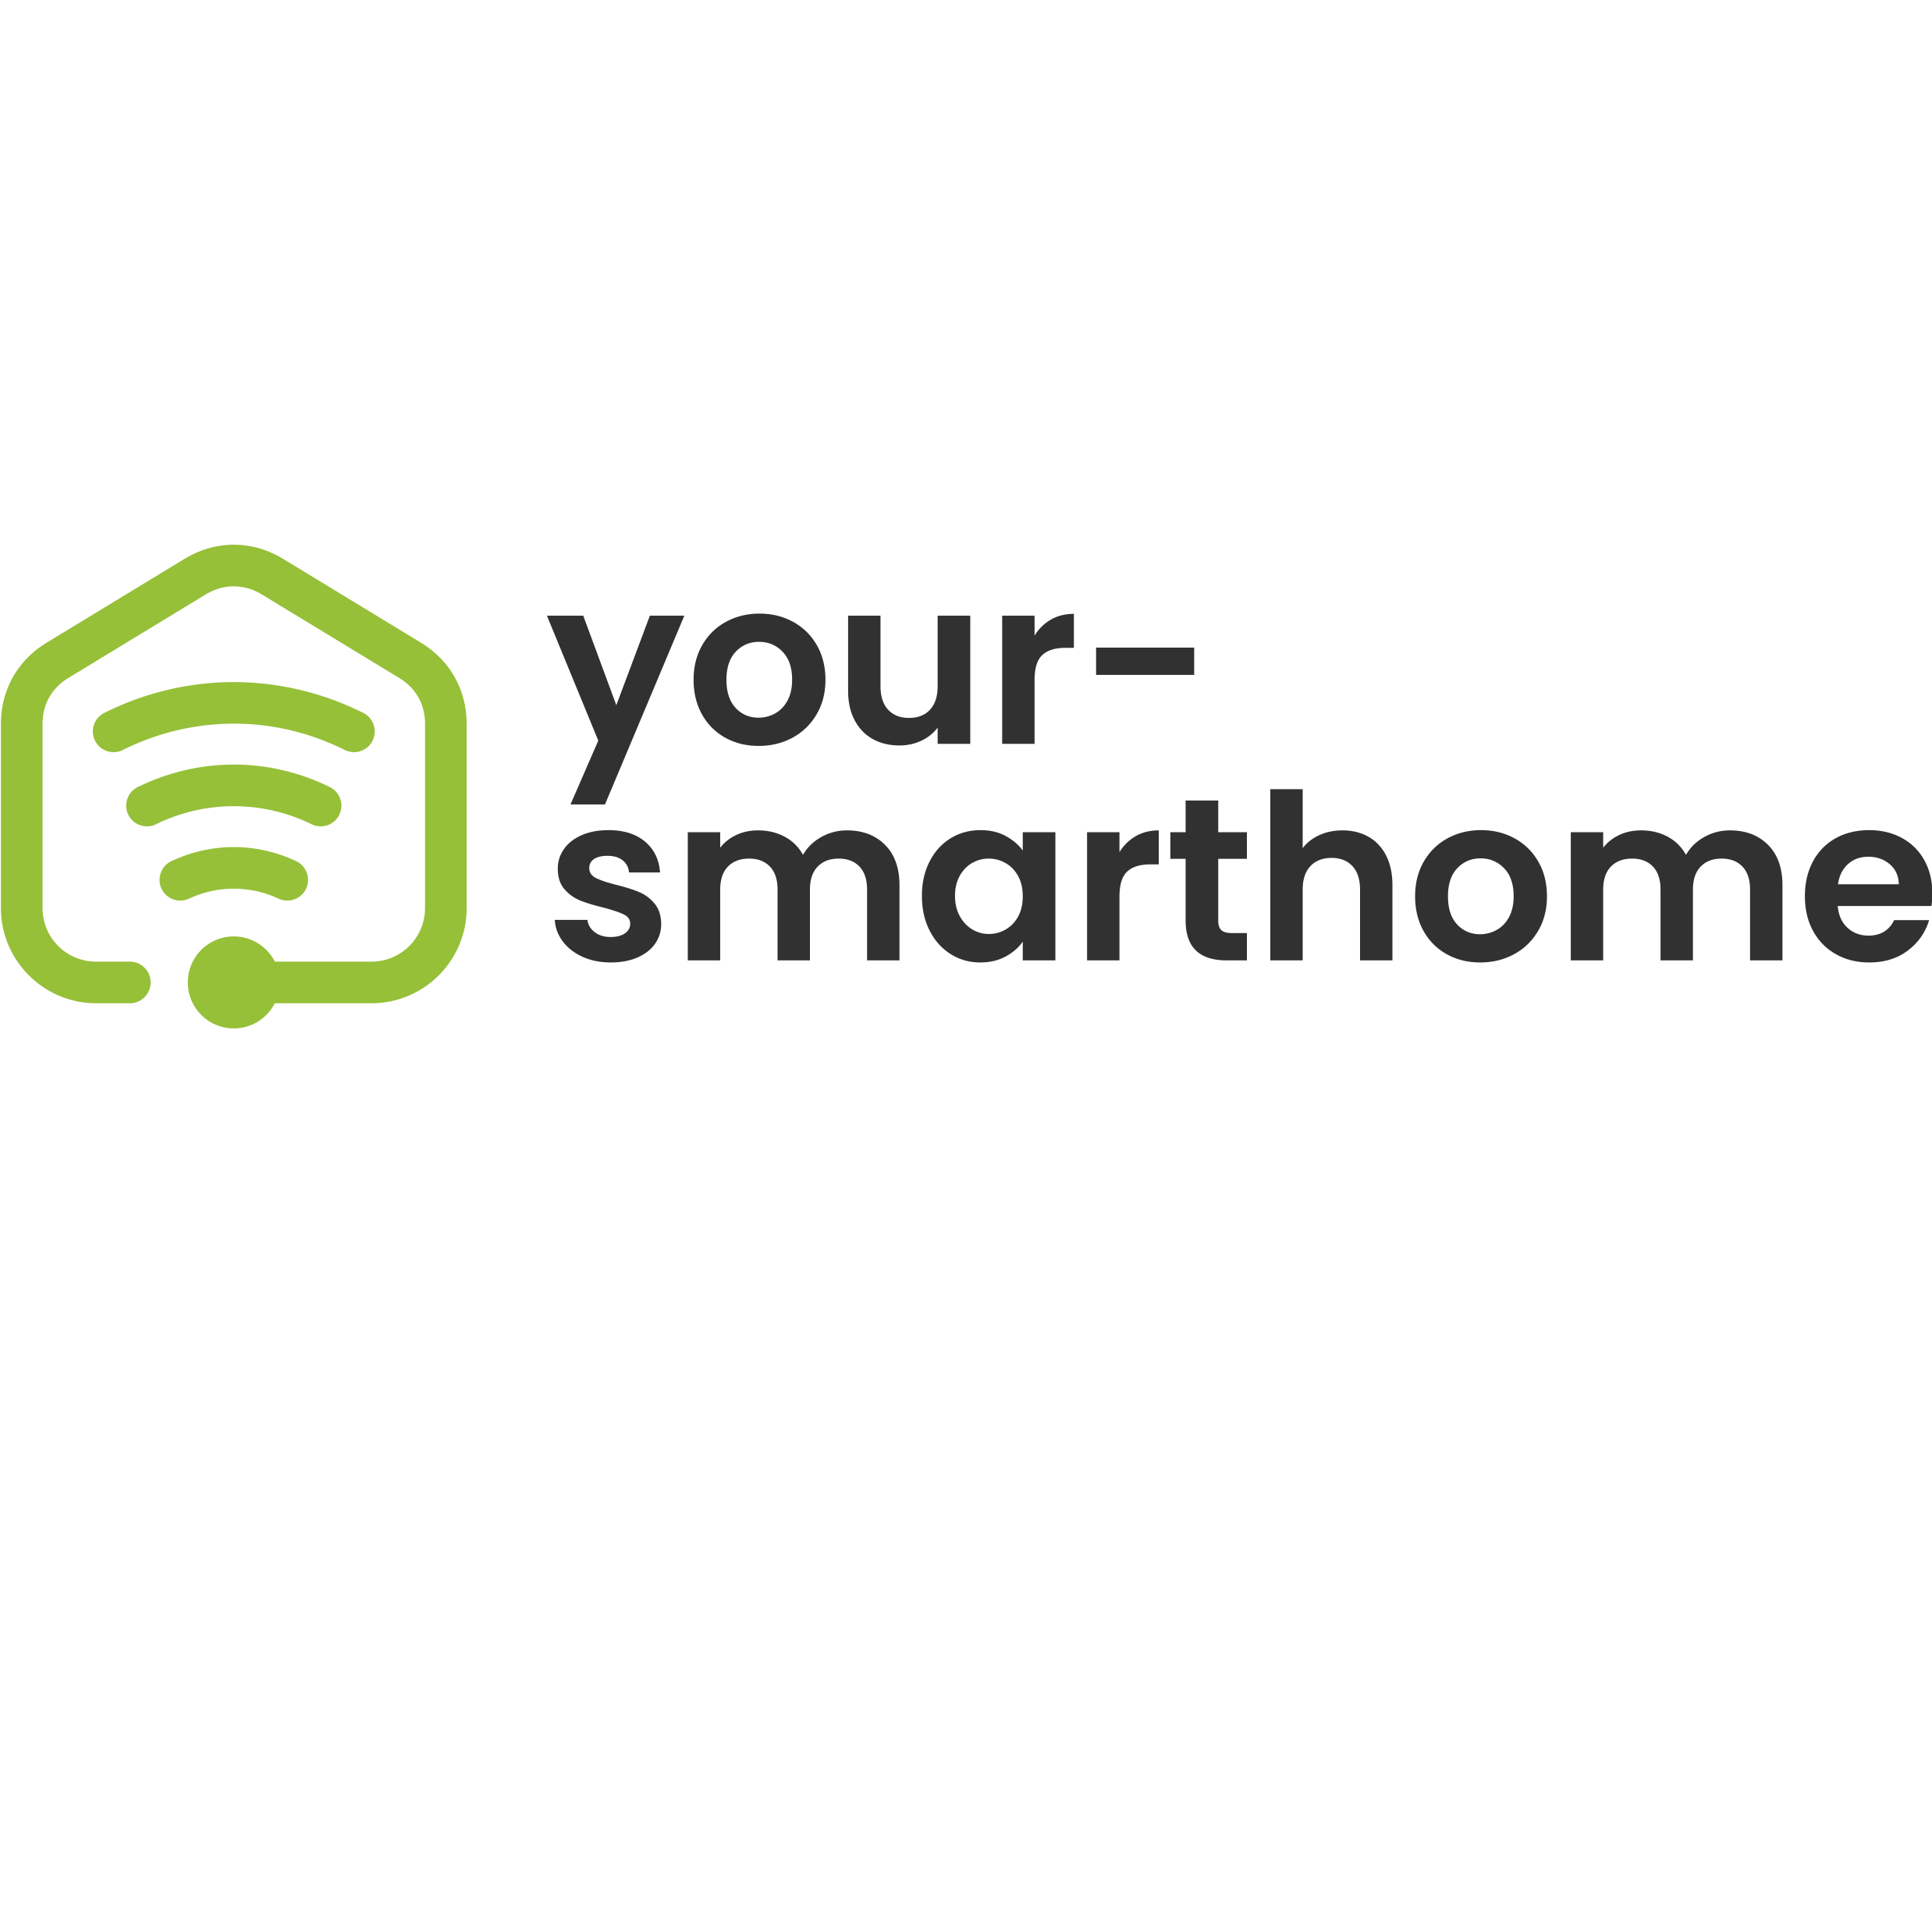 your-smarthome.com